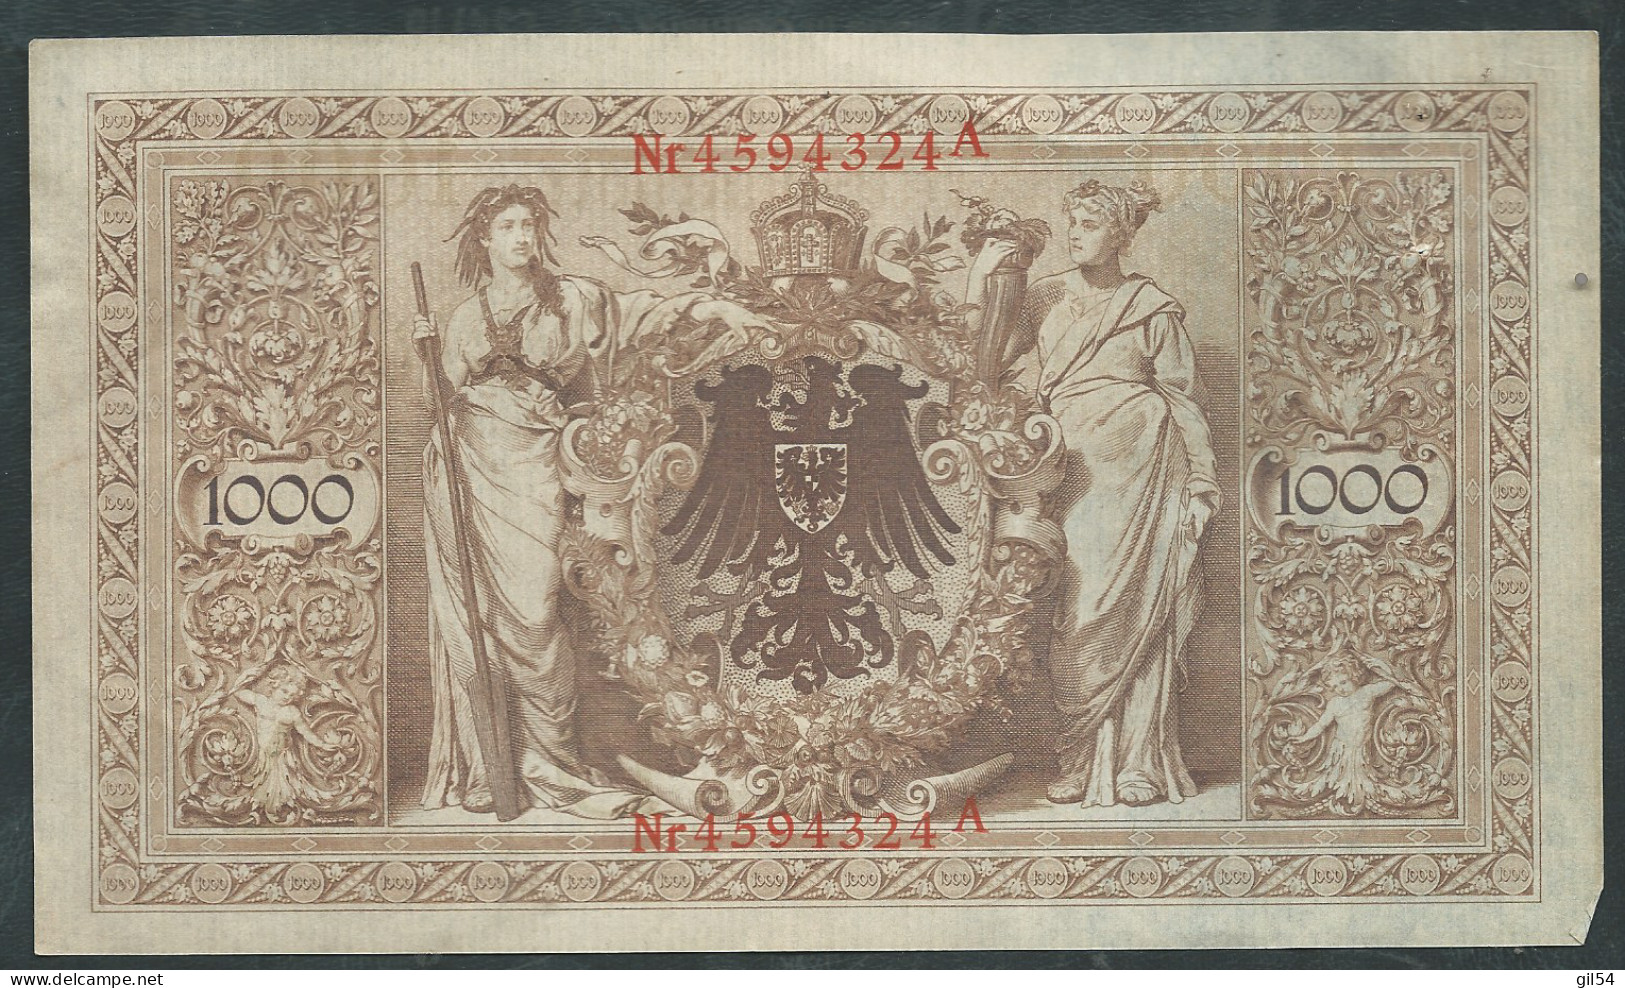 Allemagne - Billet De 1000 Mark - 21 Avril 1910 - Rouge Nr 4594324A - Laura 13010 - 1.000 Mark